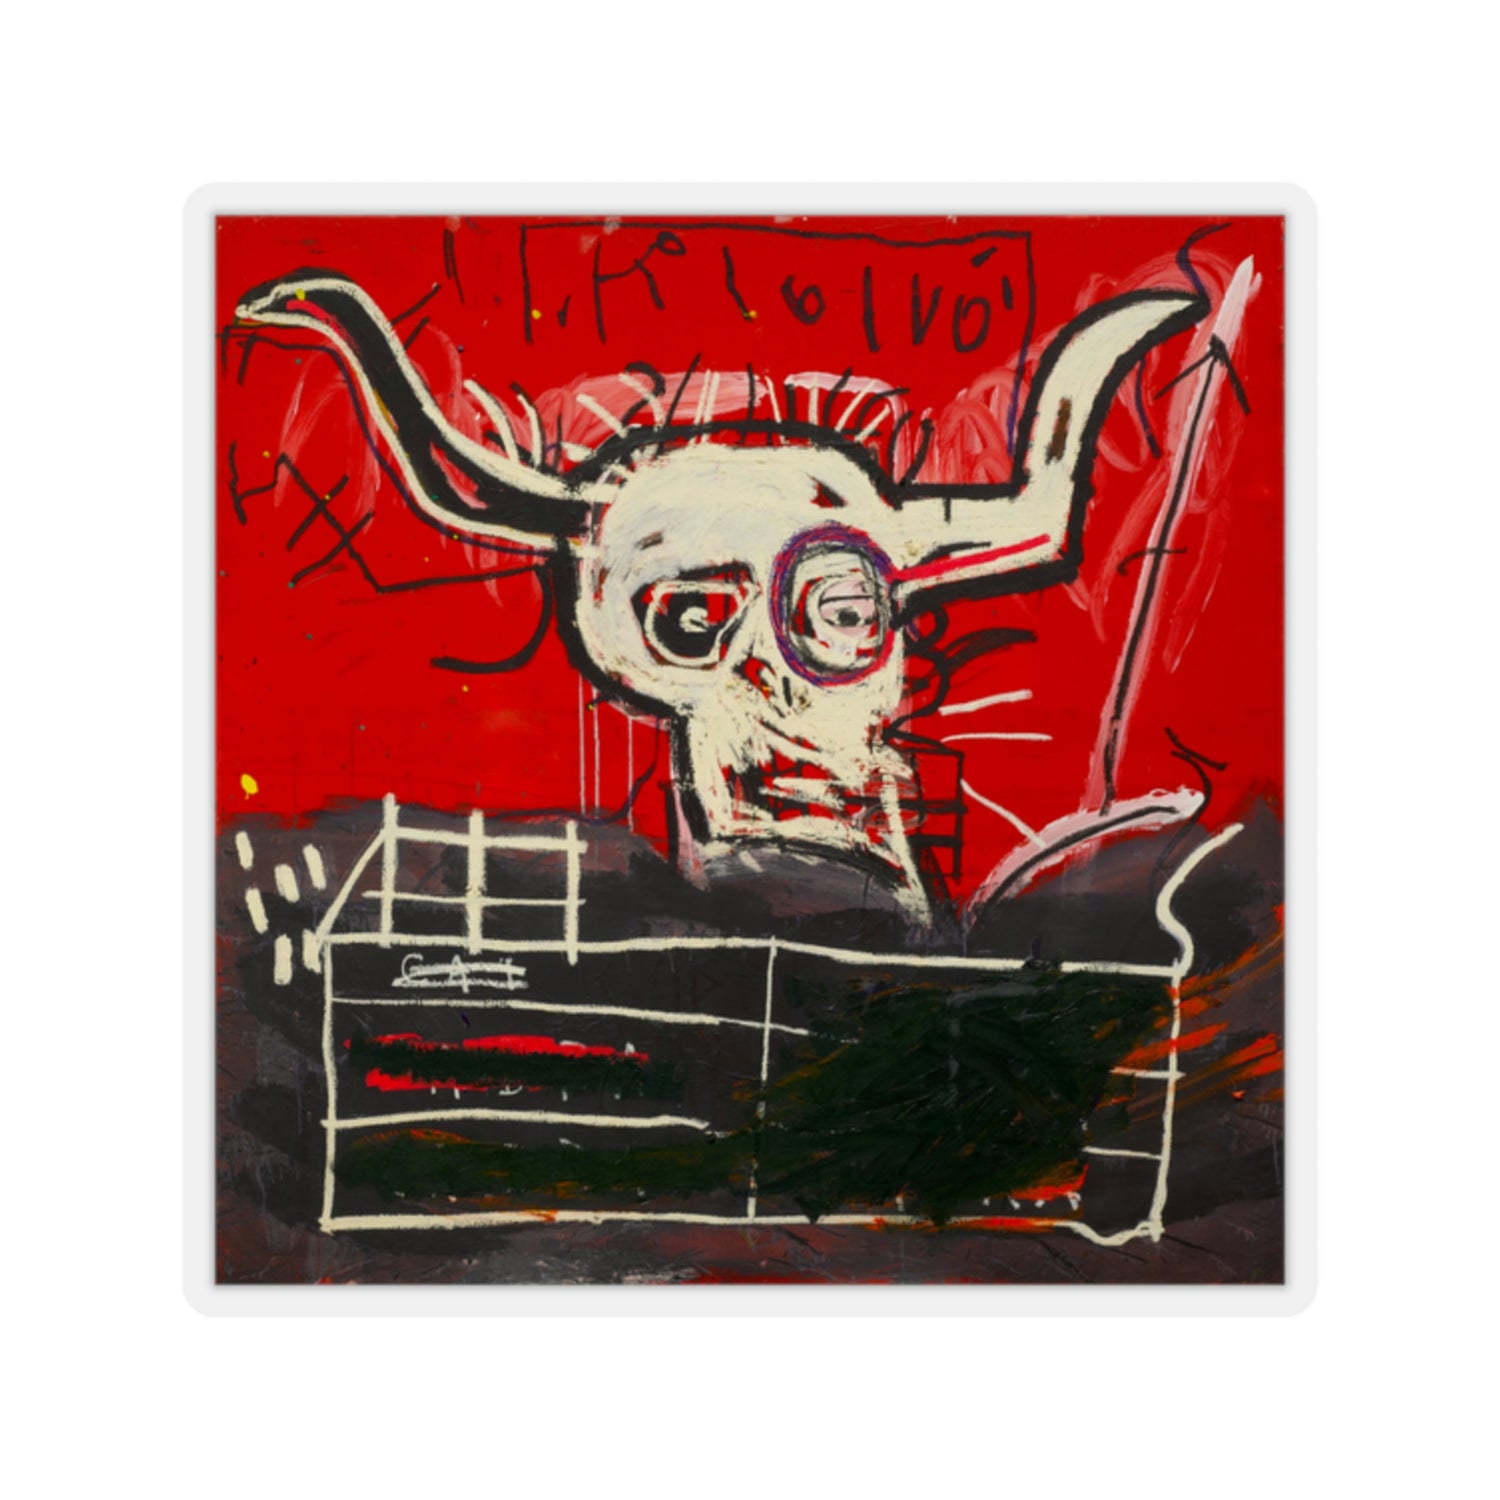 Jean-Michel Basquiat "Cabra" Artwork Vinyl Sticker